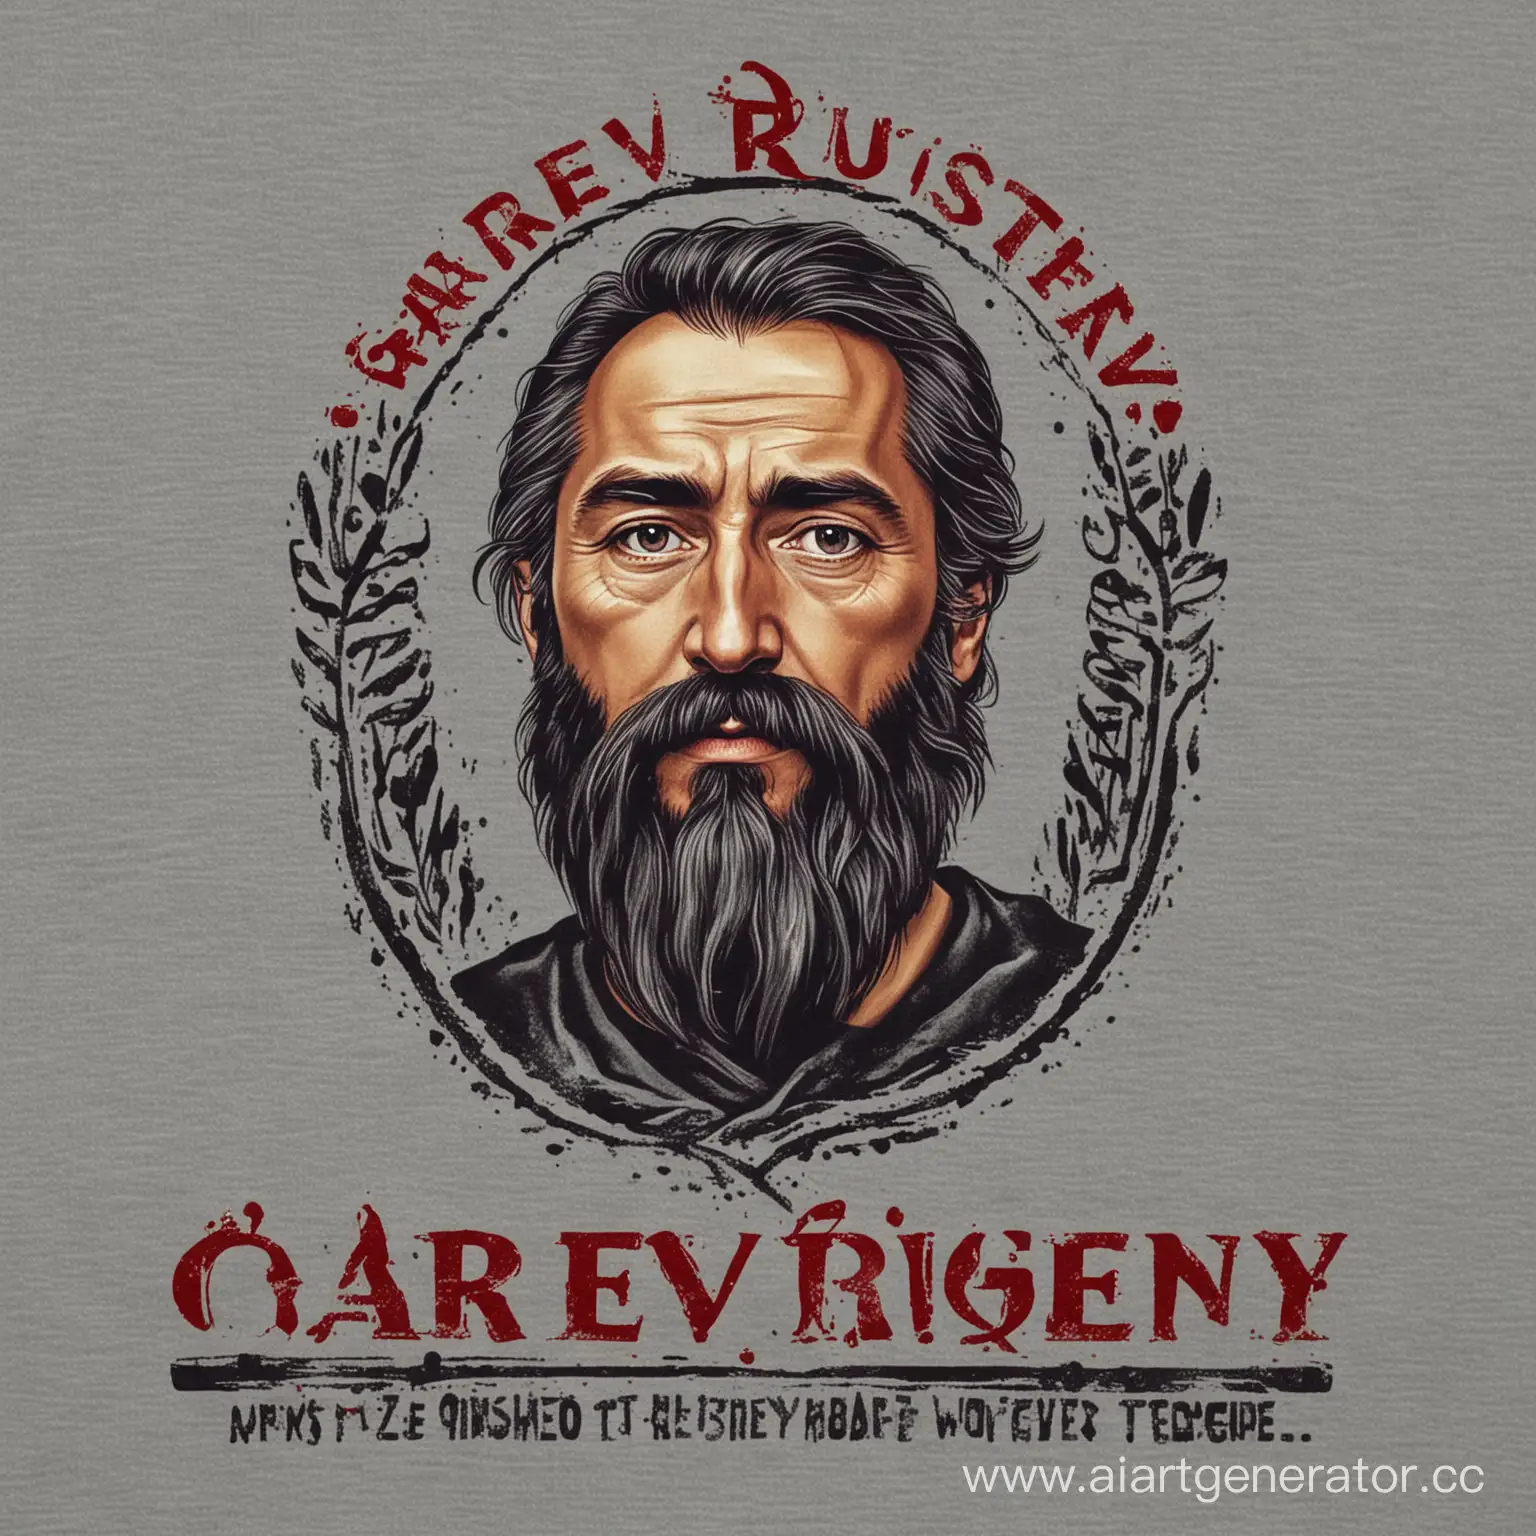 Принт на футболку с текстом "GAREEV RUSTEM"